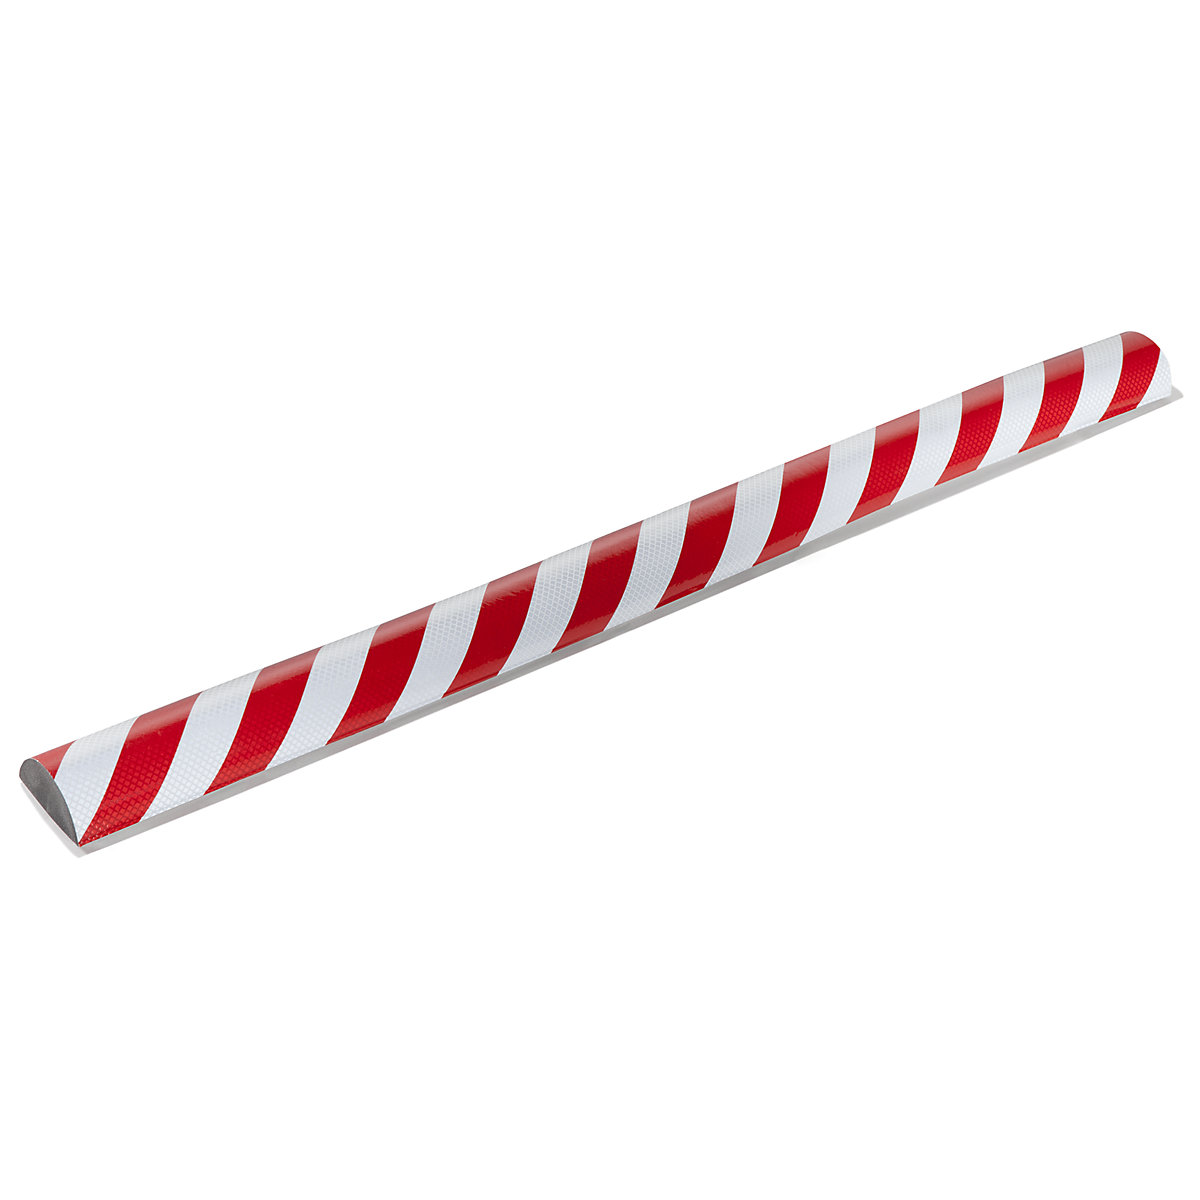 Protection des surfaces Knuffi® – SHG, type C+, pièce de 1 m, rouge / blanc rétro-réfléchissant